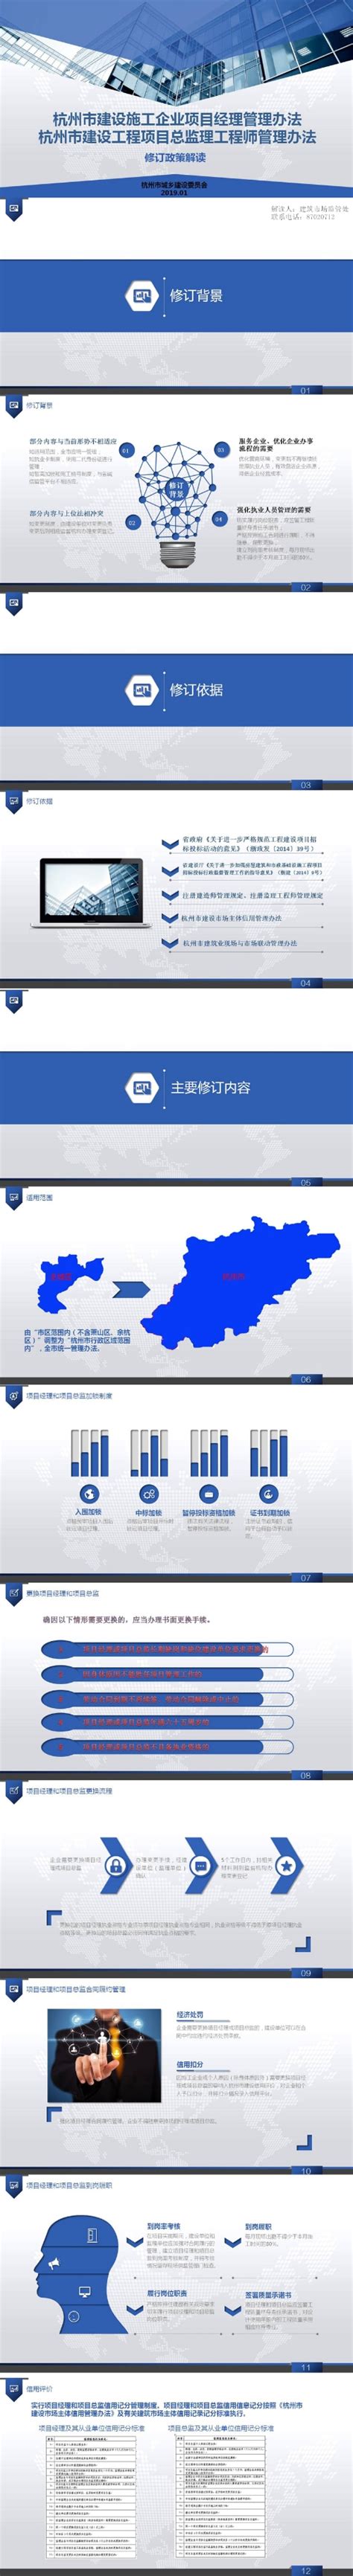 《杭州市建设工程项目总监理工程师管理办法》图片解读